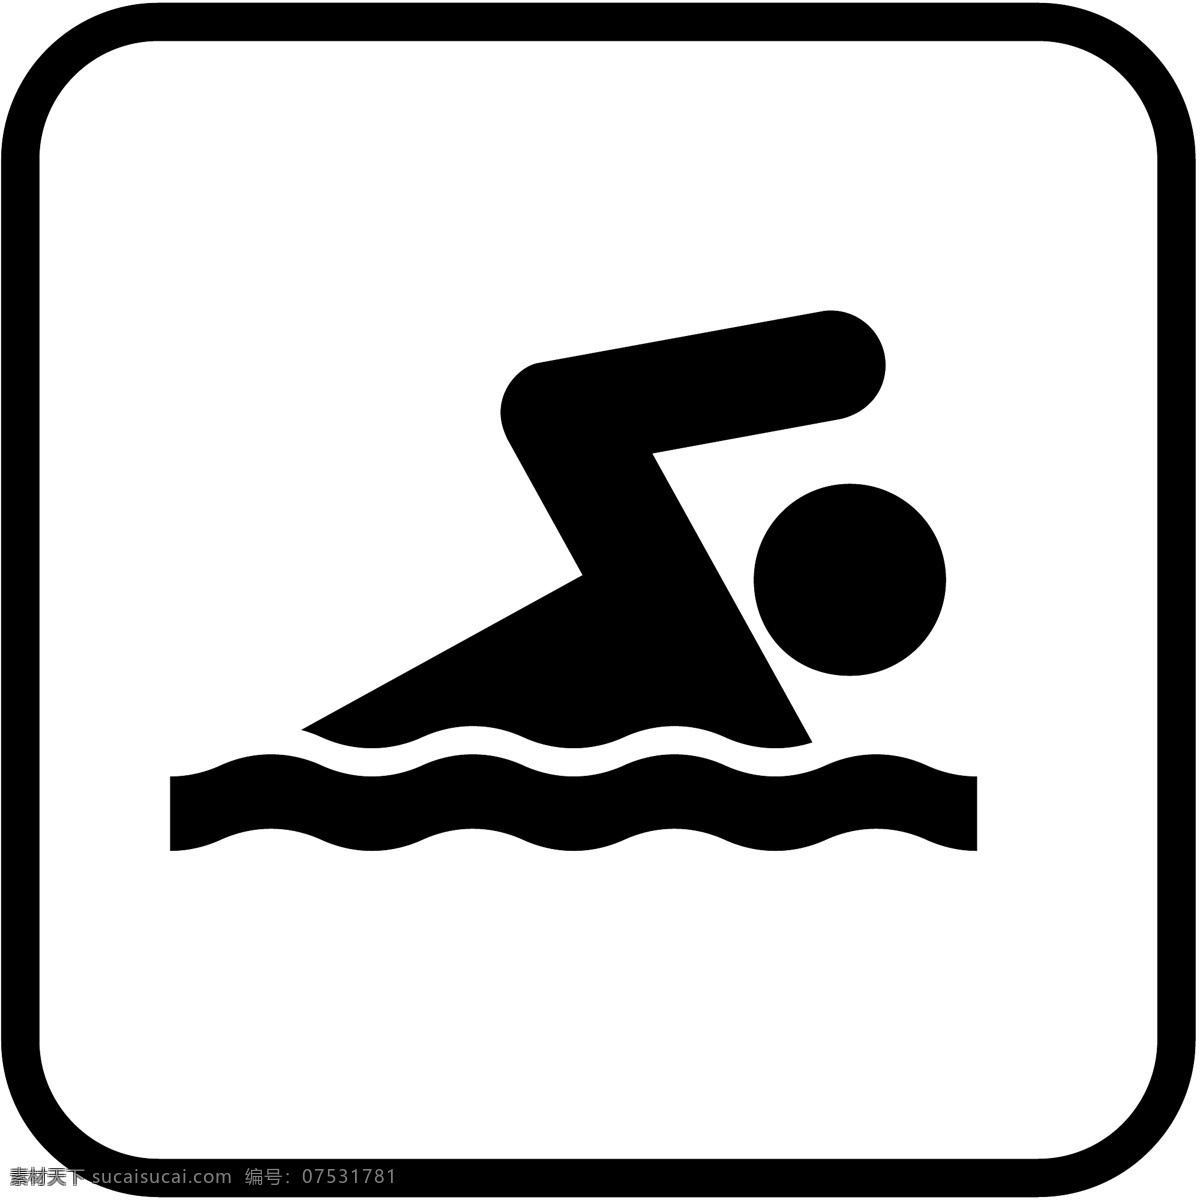 标识 标志 图标 标图 游泳的提示 电视台标志 小标志 企业 logo 标识标志图标 矢量